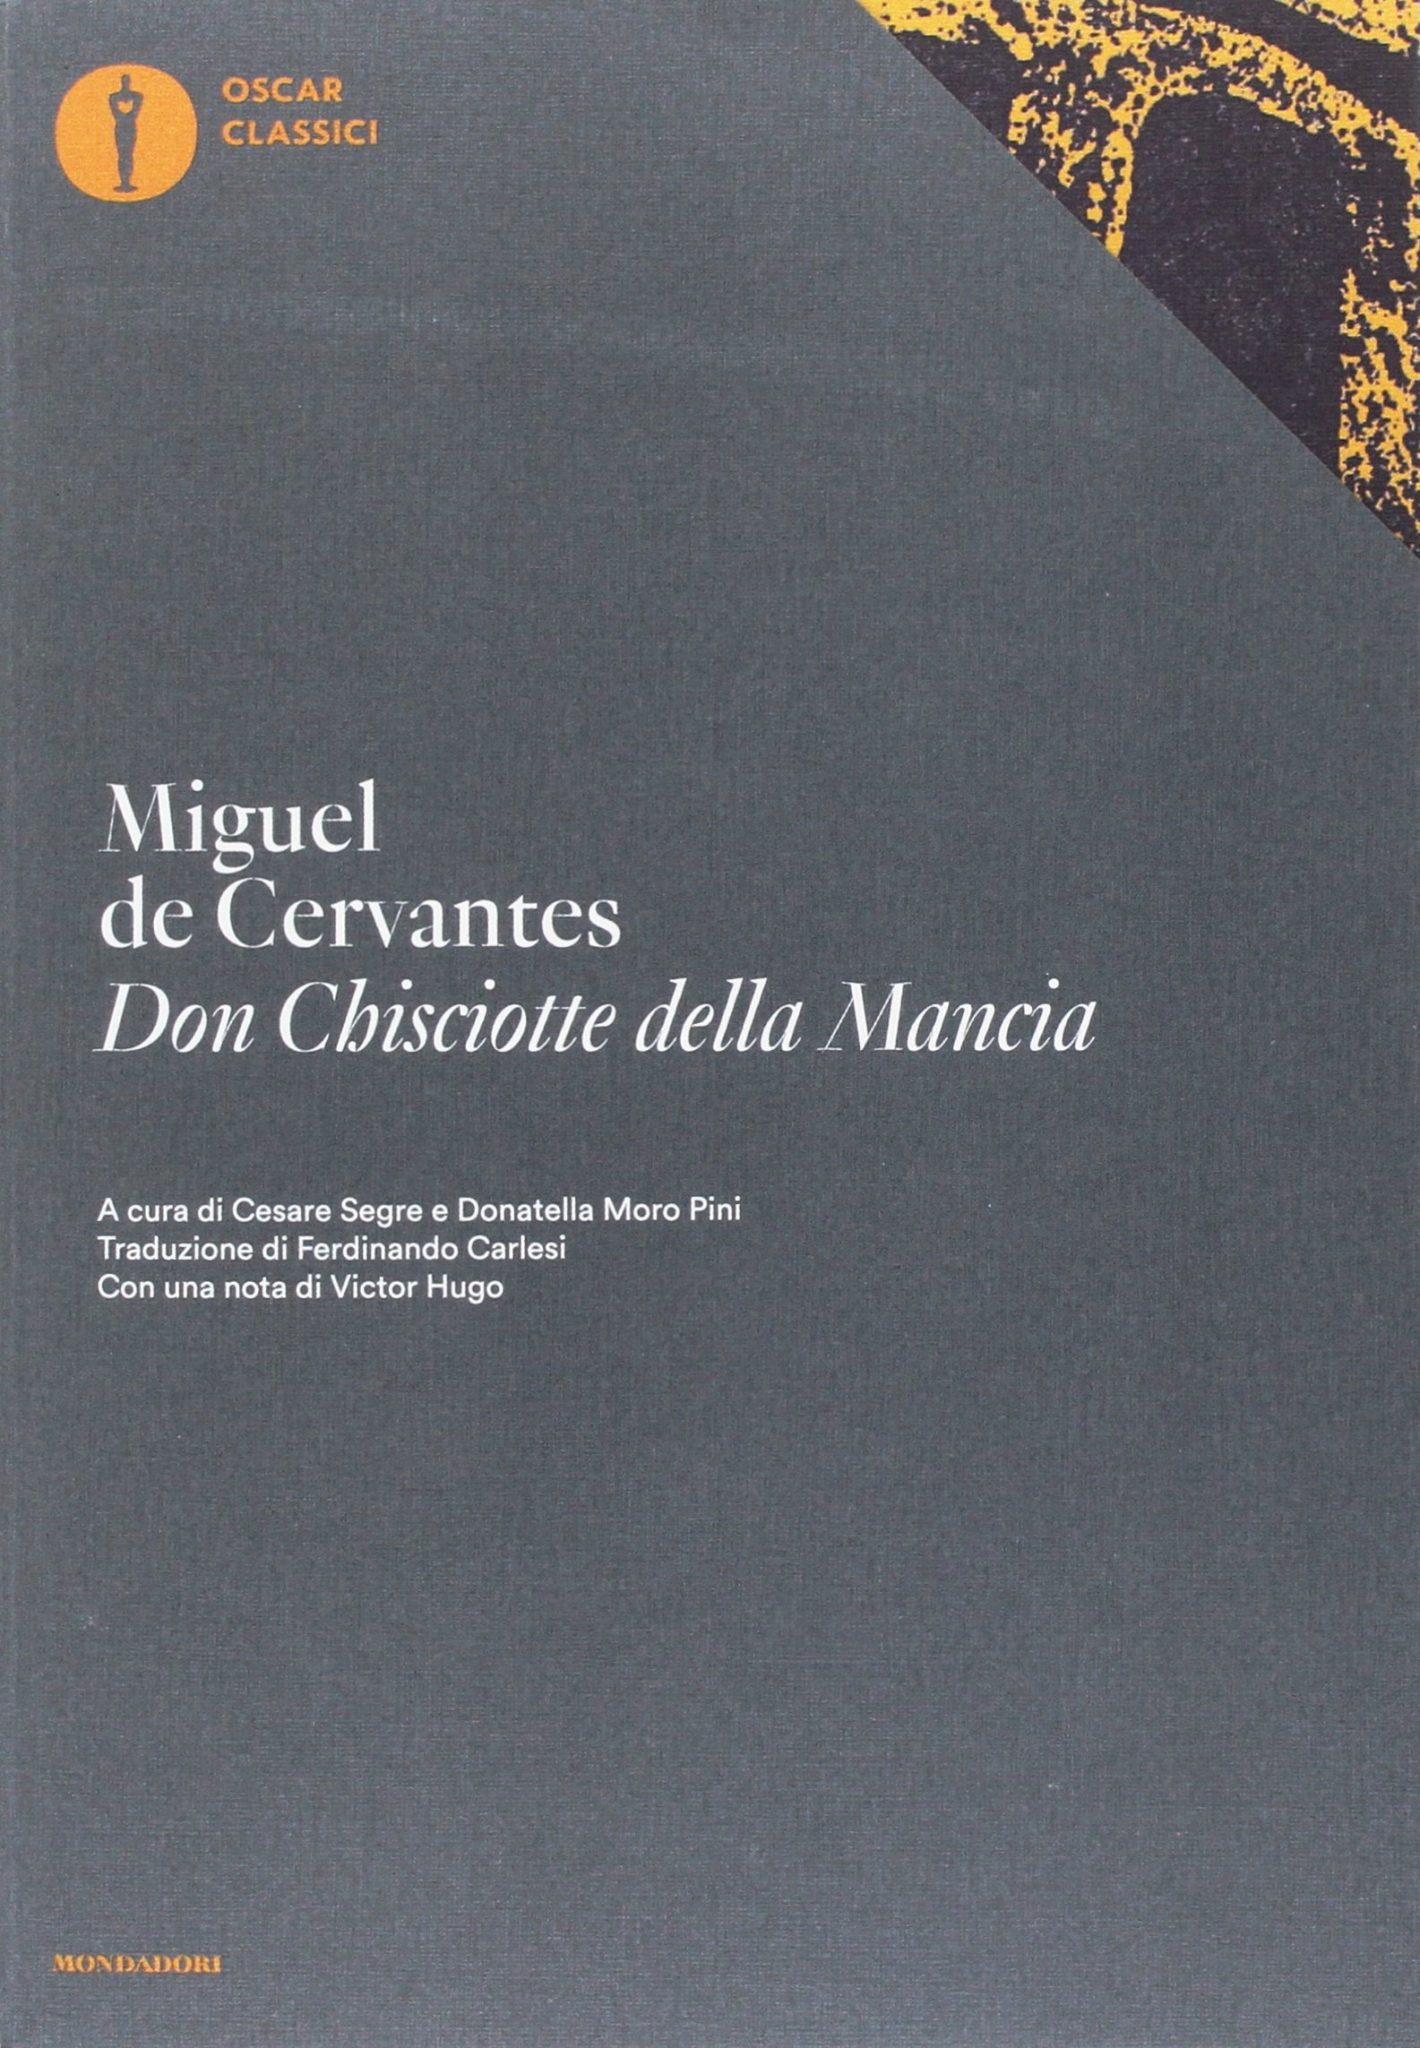 Don Chisciotte della Mancia, copertina